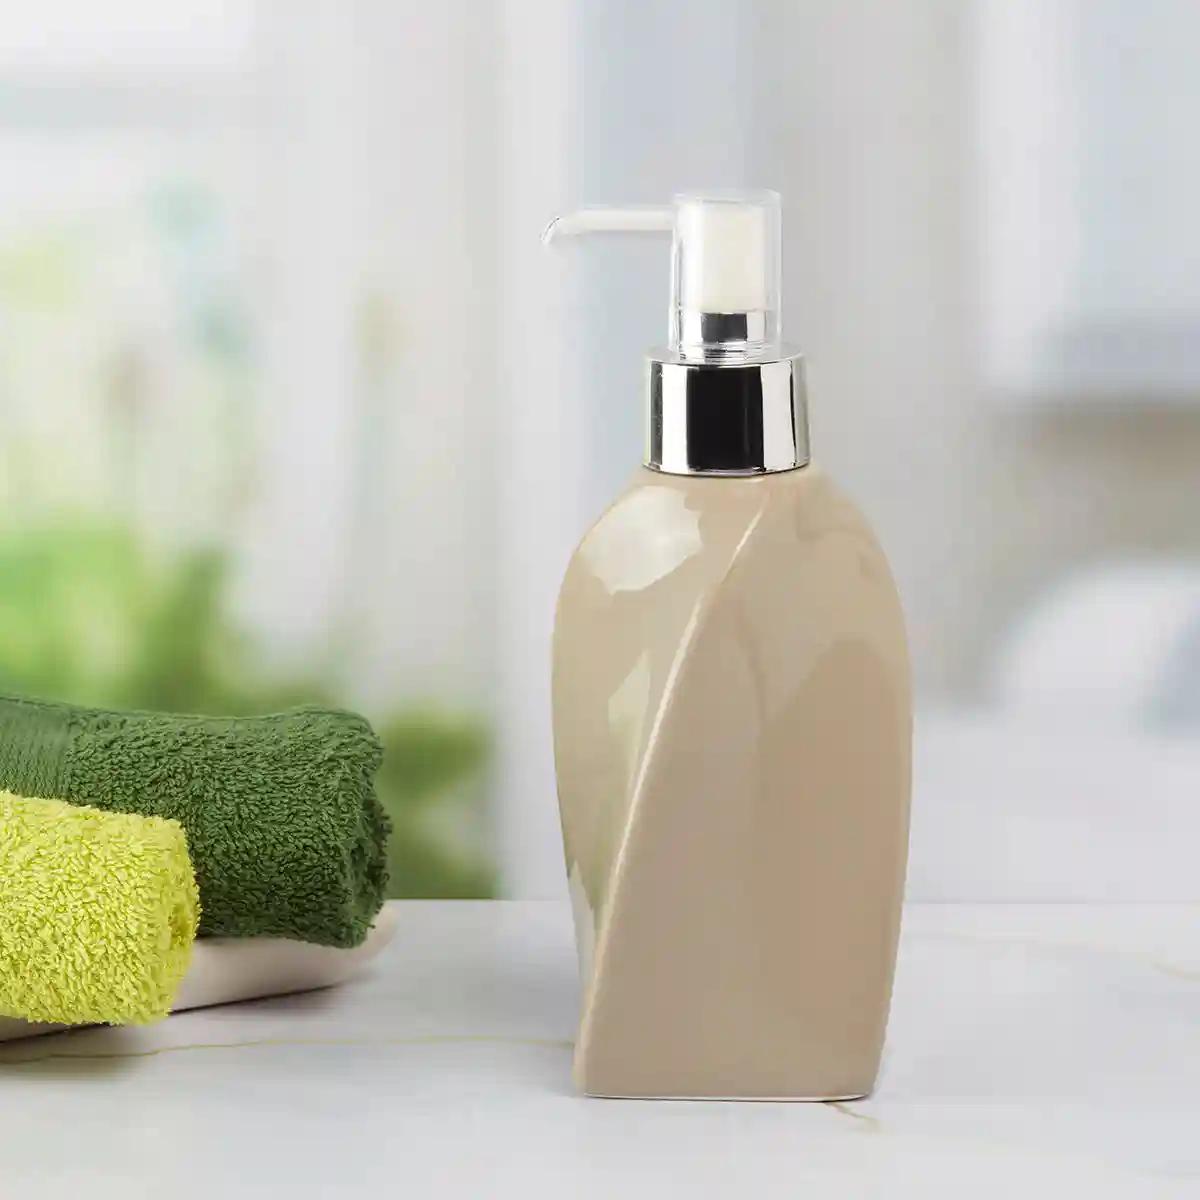 Kookee Ceramic Soap Dispenser for Bathroom handwash, refillable pump bottle for Kitchen hand wash basin, Set of 2 - Beige (9658)